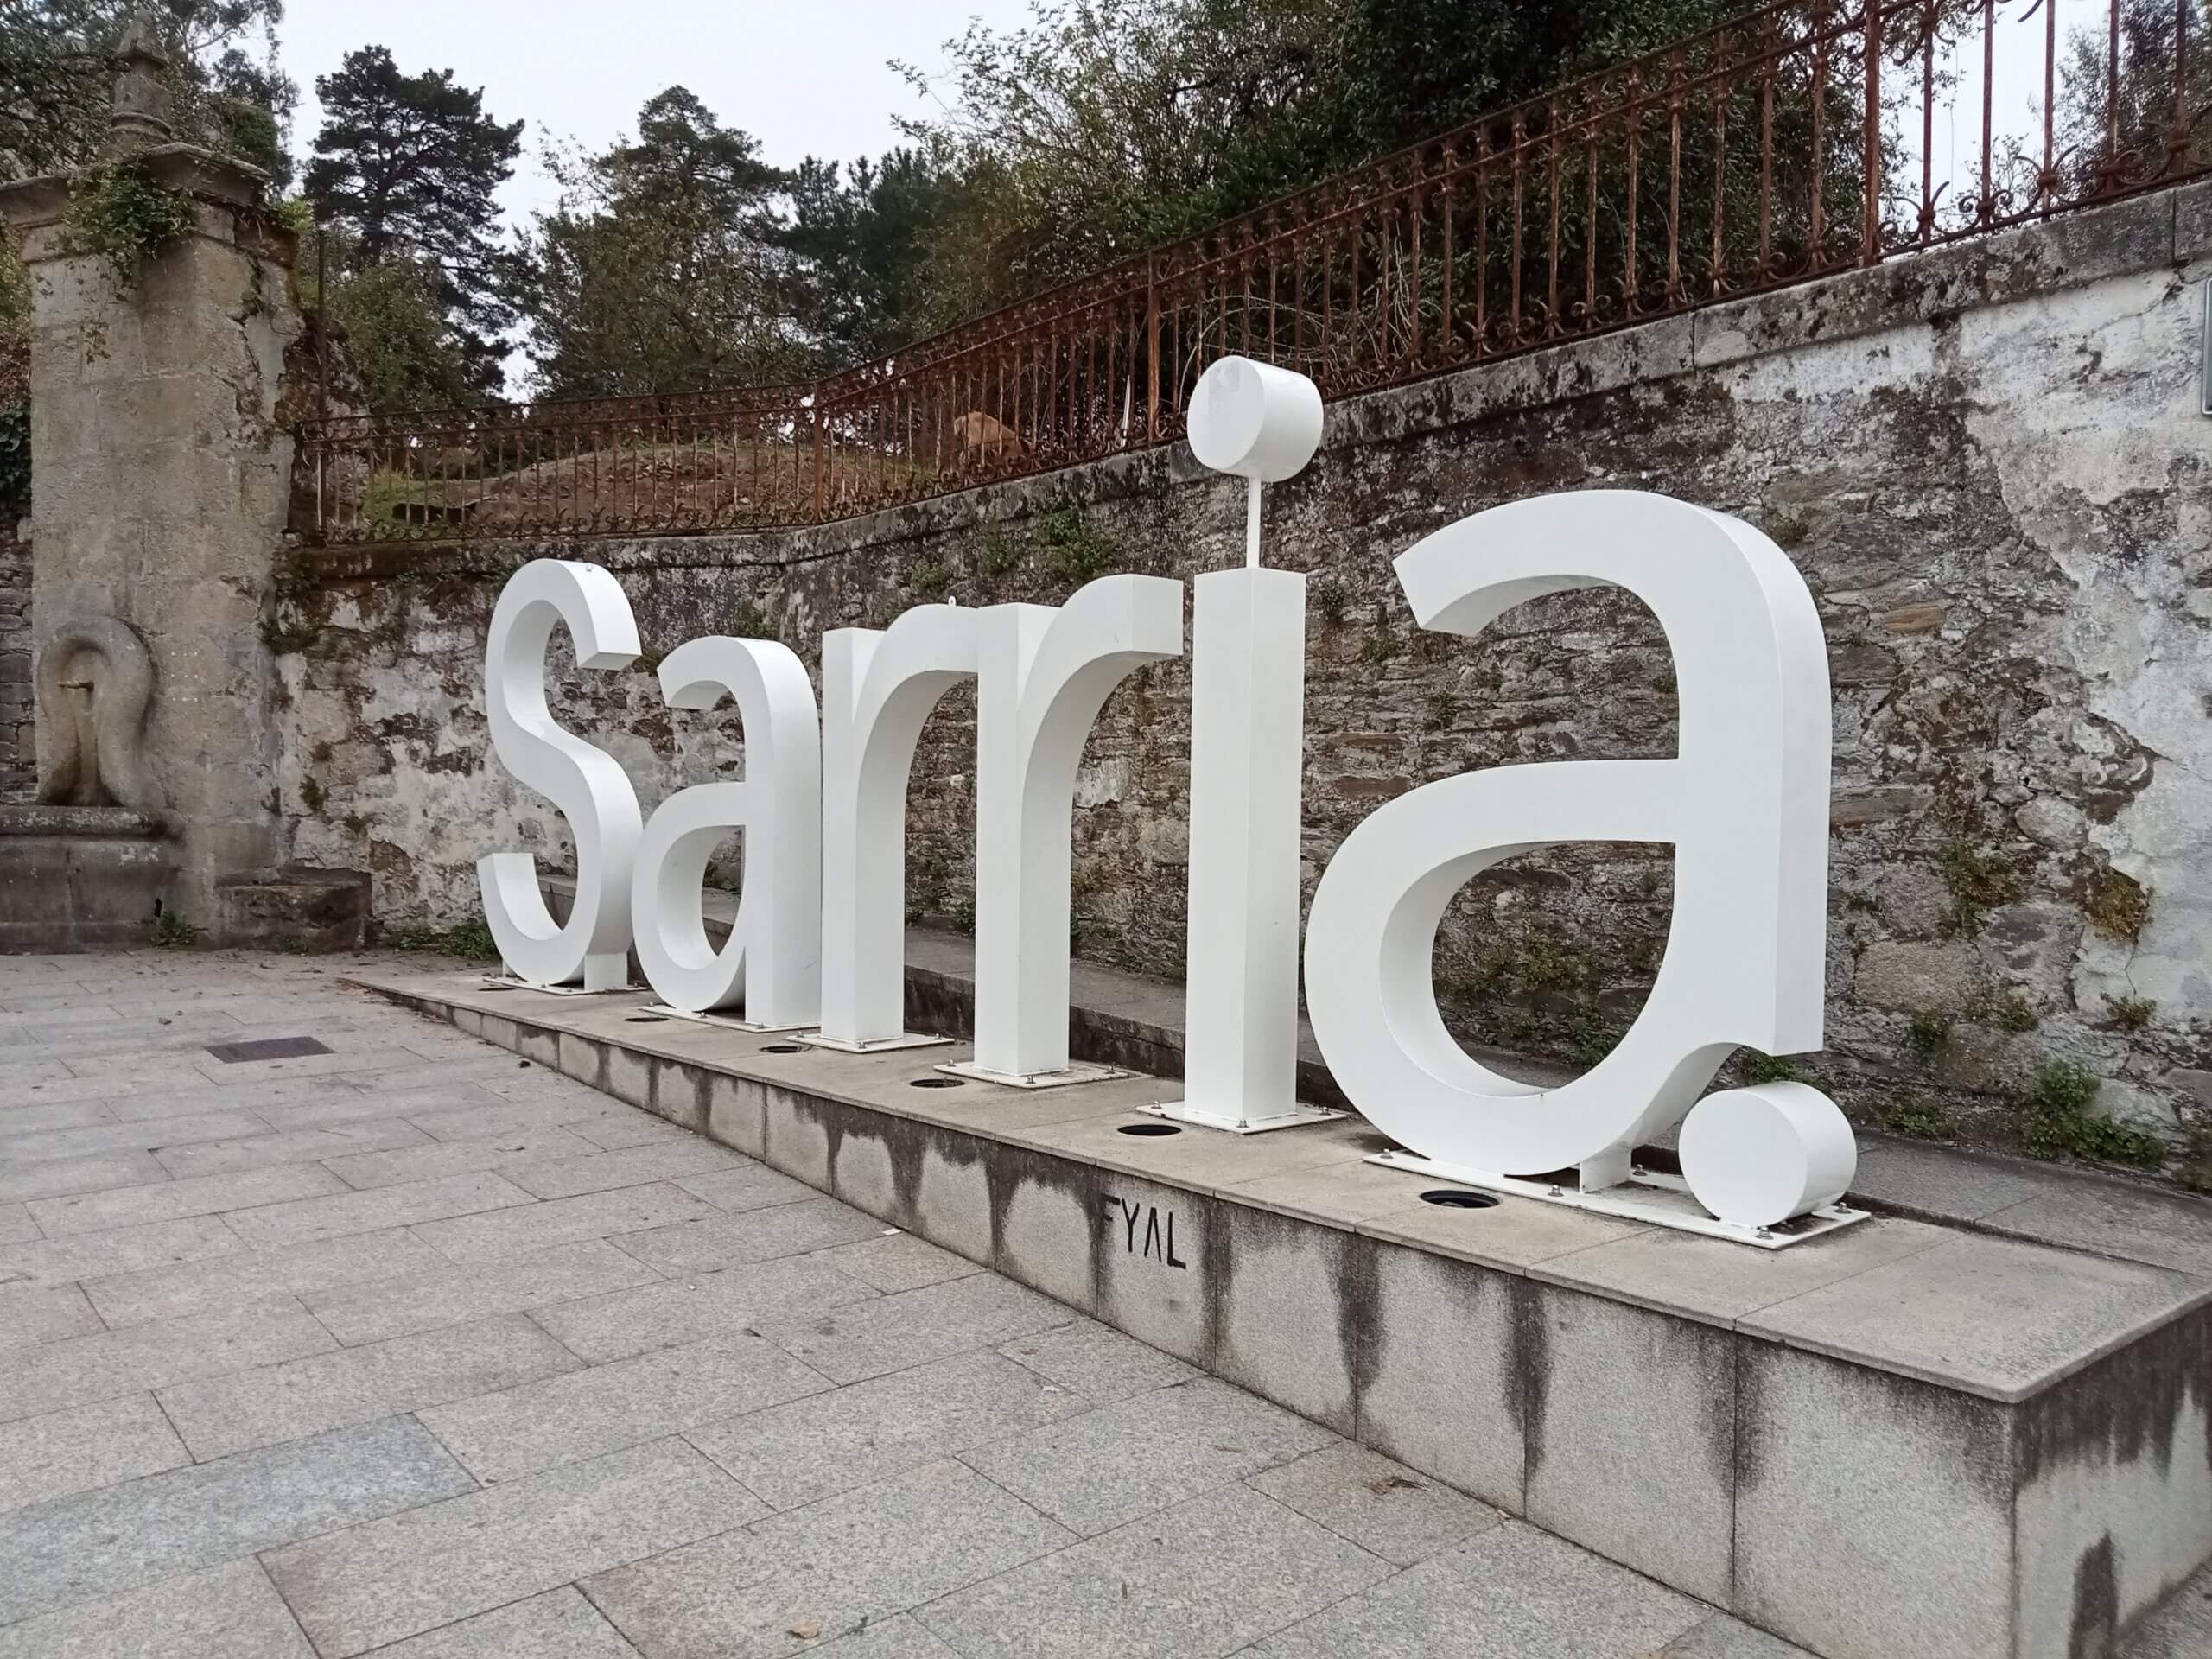 Sarria letters